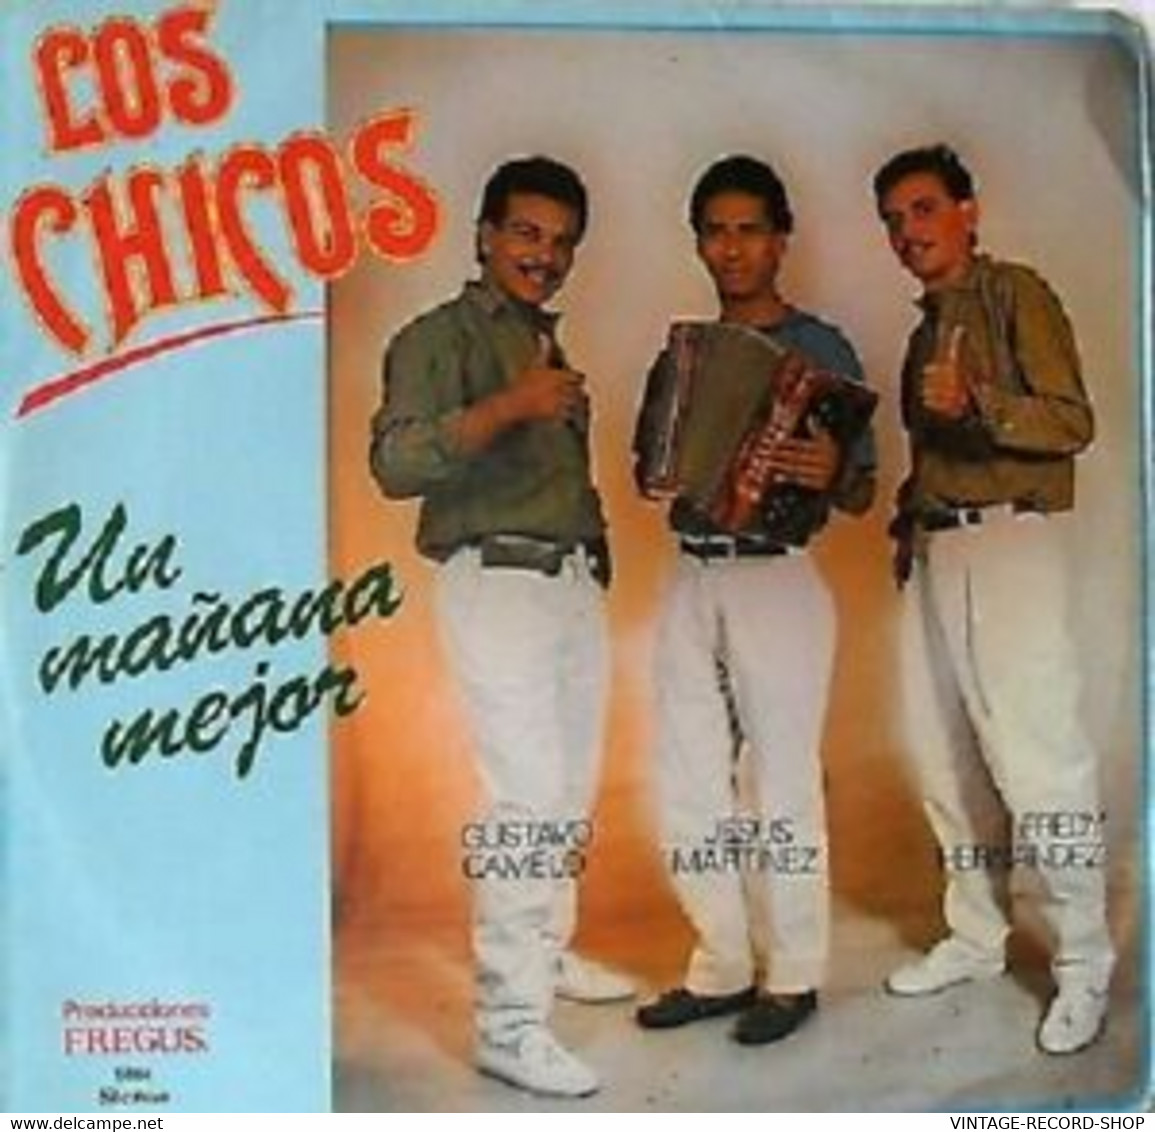 LOS CHICOS-UN MEJOR MAÑANA- PASEOS-MERENGUE-VALLENATO VICTORIA VG+LATIN MUSIC - Wereldmuziek